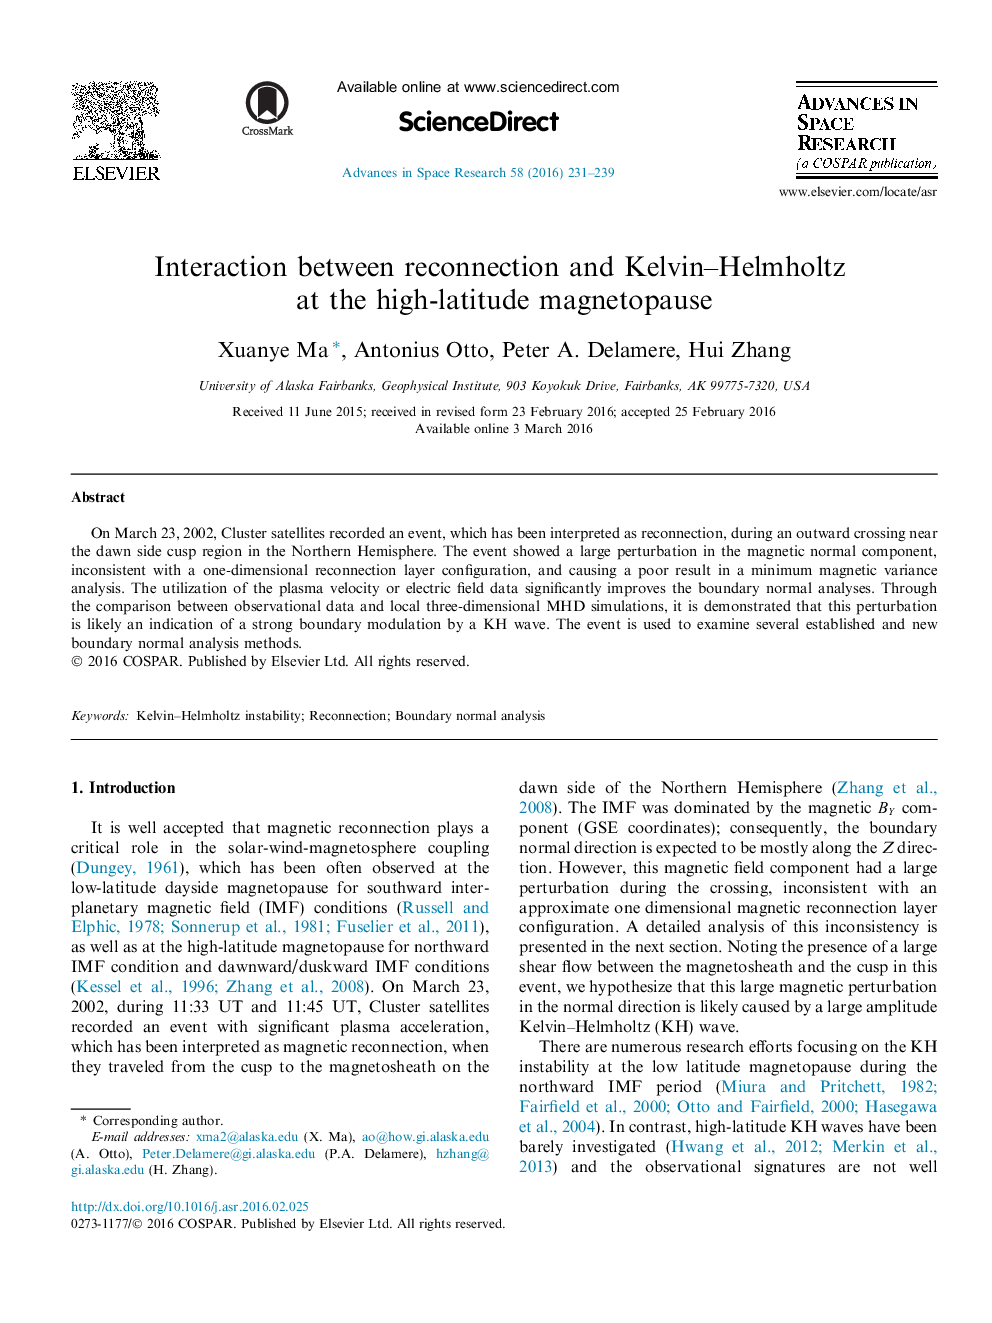 تعامل بین اتصال مجدد و Kelvin-Helmholtz در مغناطیس پائین با عرض جغرافیایی بالا